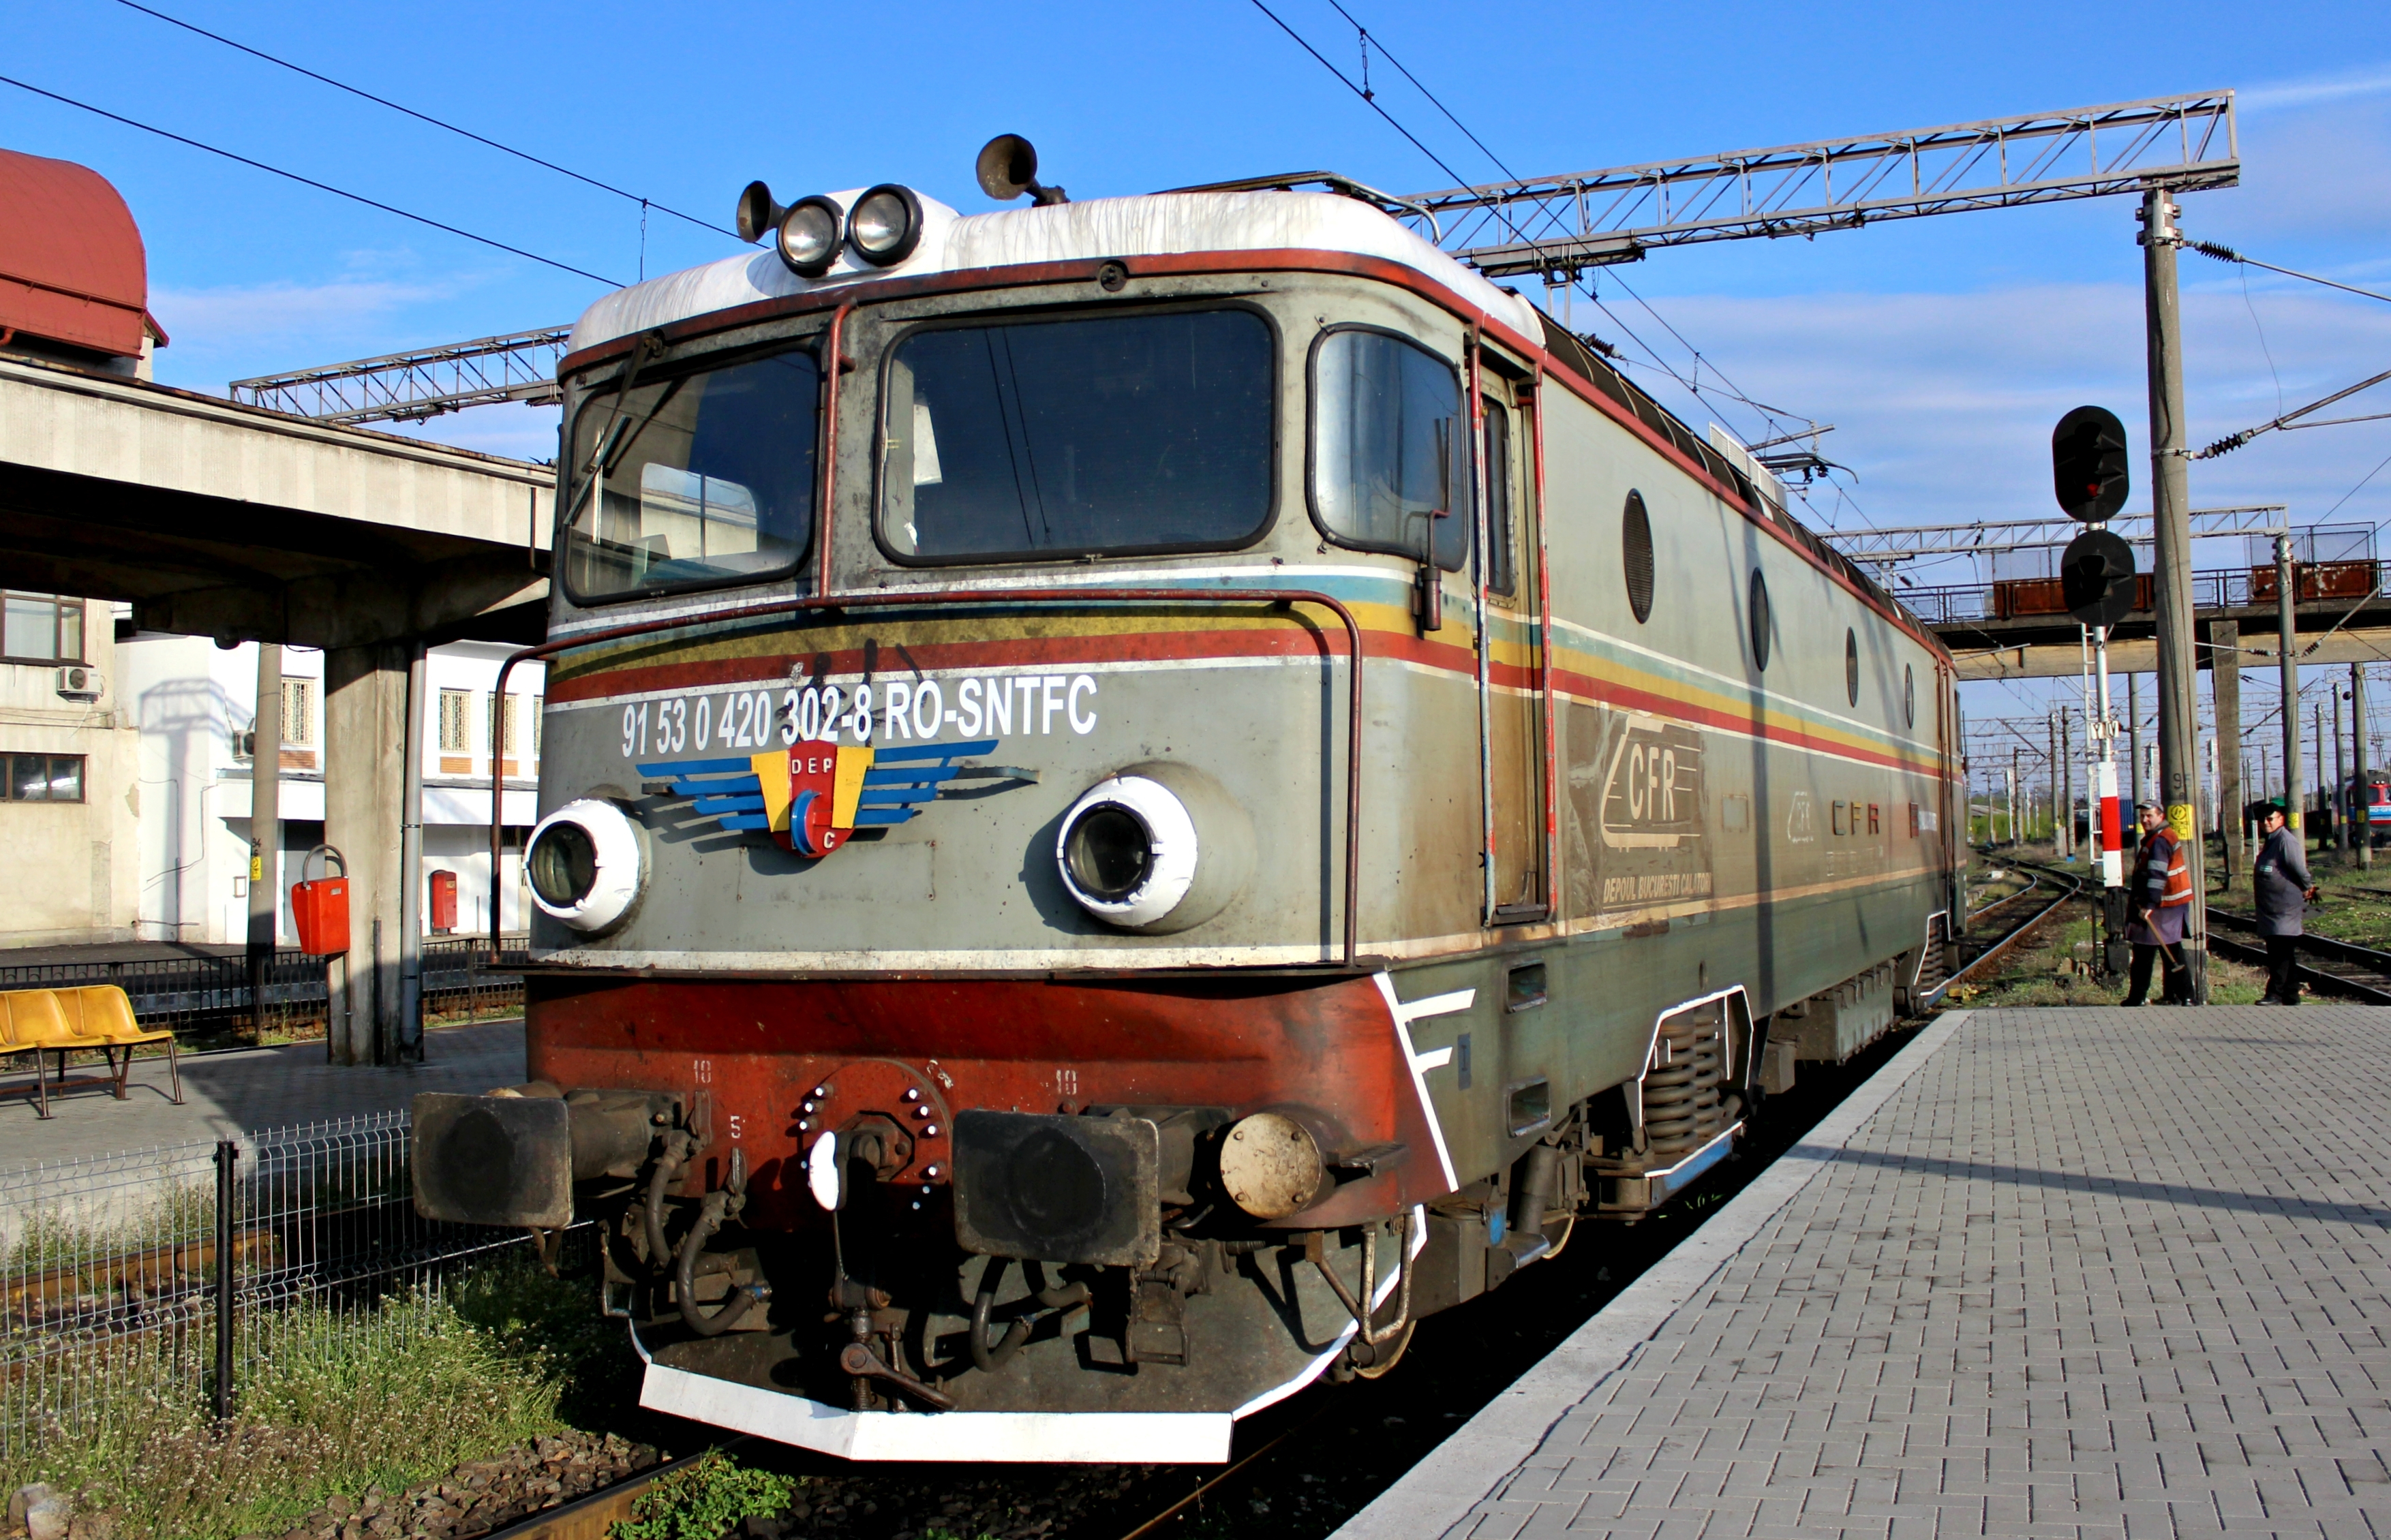 【电力机车科普】6g1型电力机车的原型——罗马尼亚铁路060 ea型电力